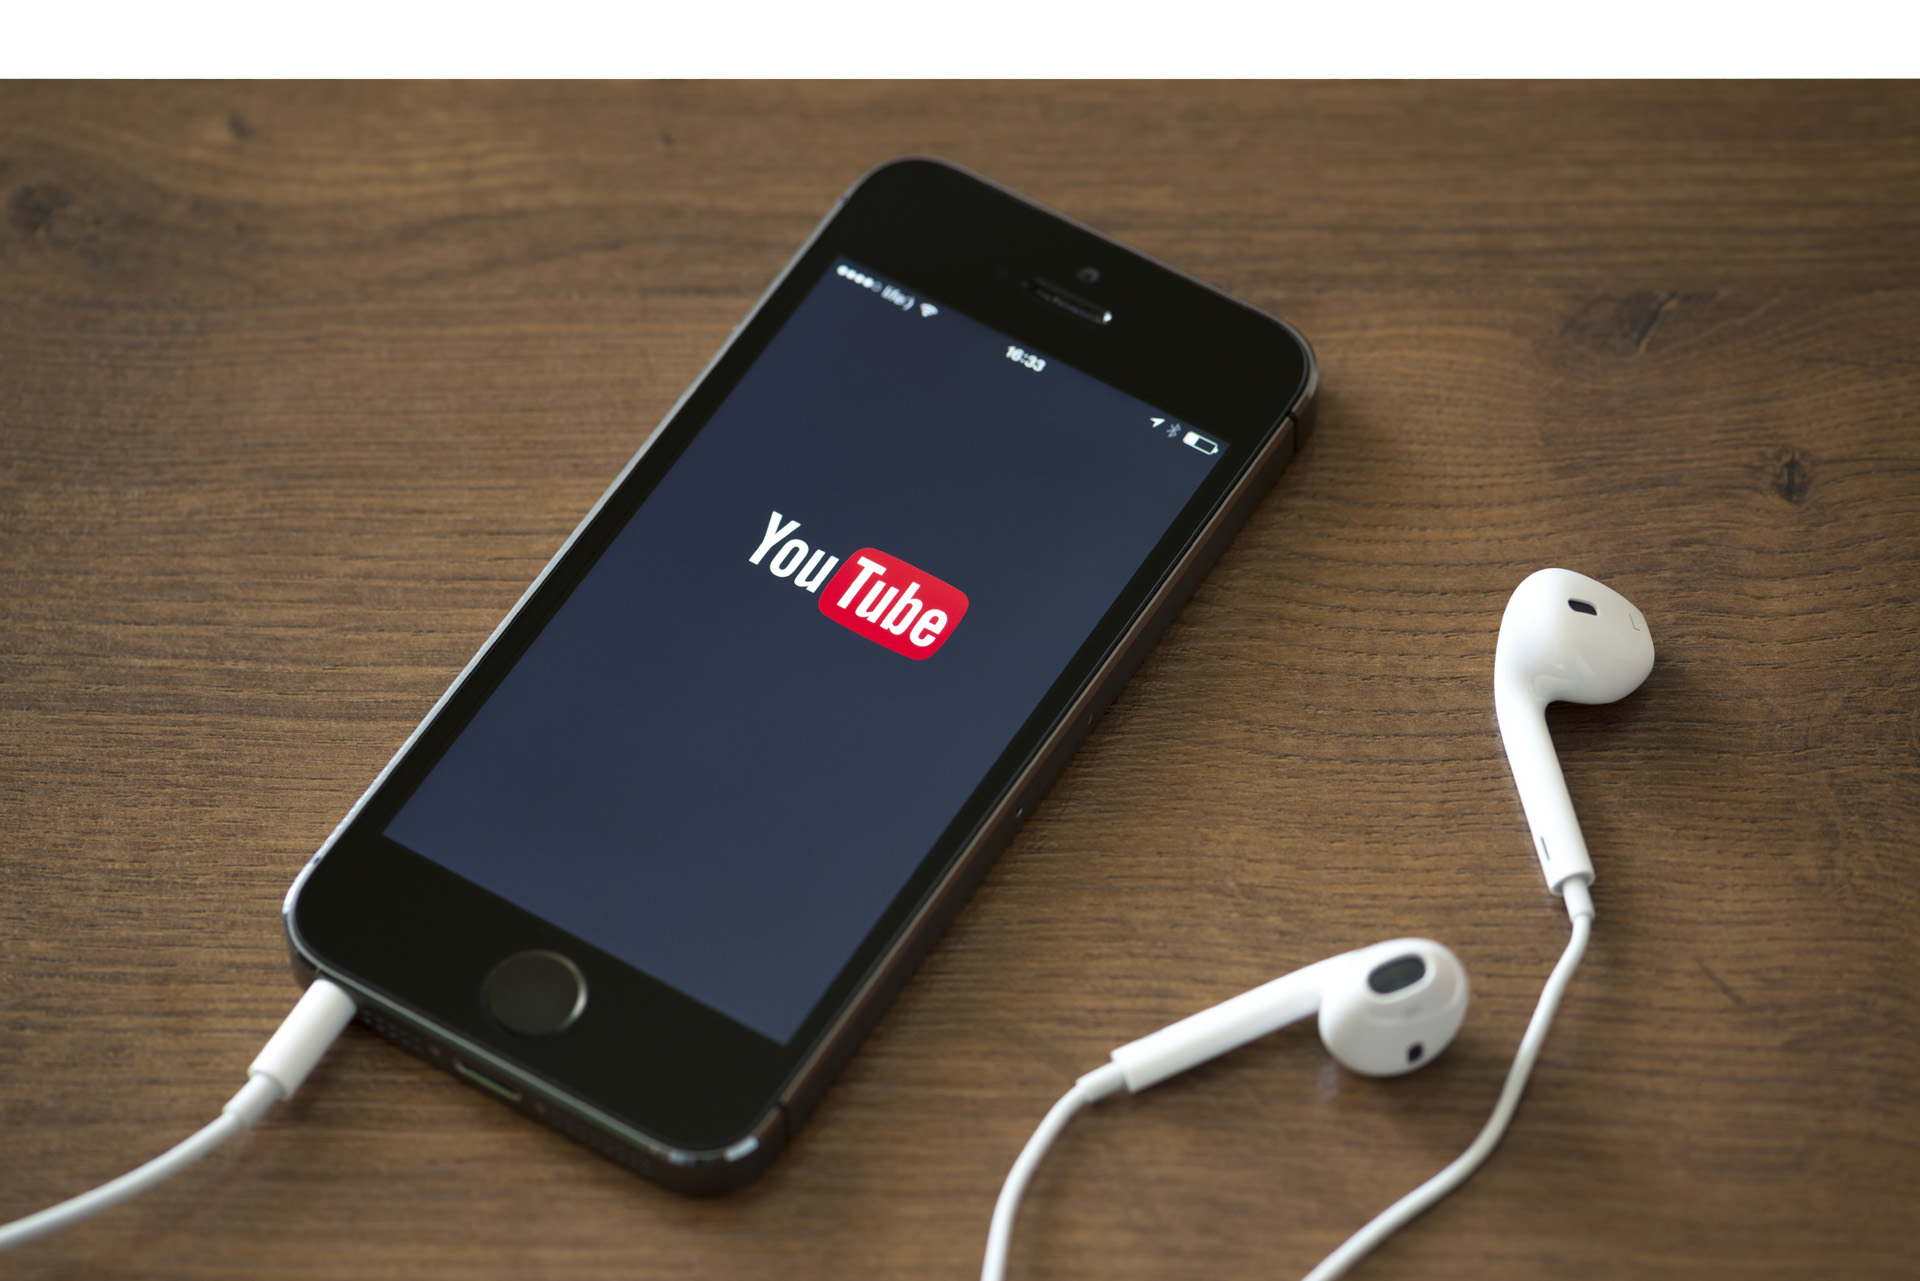 Youtube traerá servicio de Tv en directo